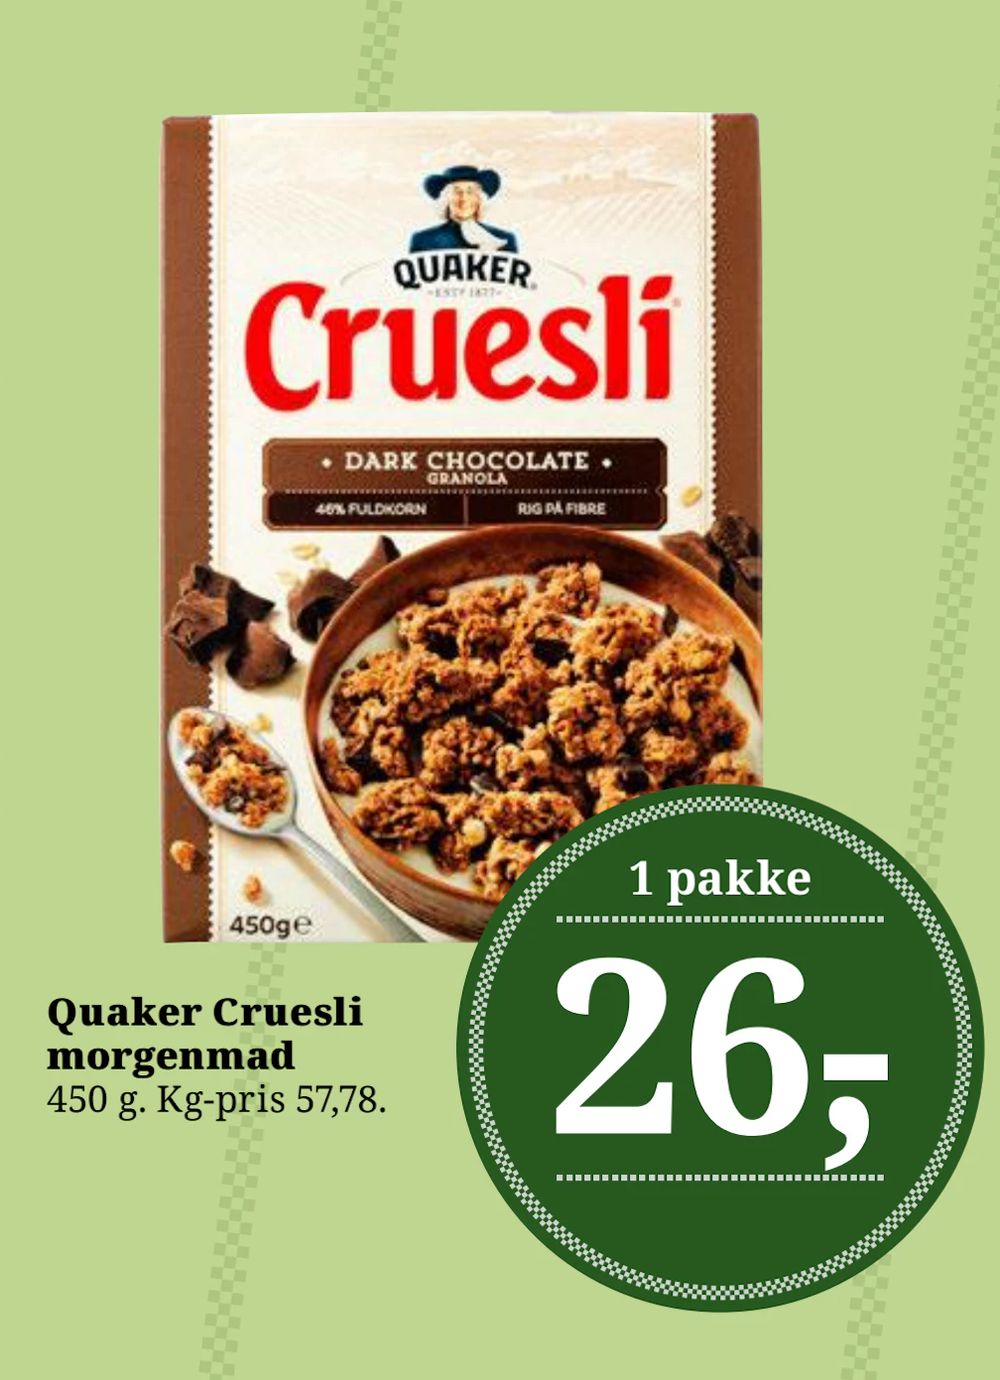 Tilbud på Quaker Cruesli morgenmad fra Dagli'Brugsen til 26 kr.